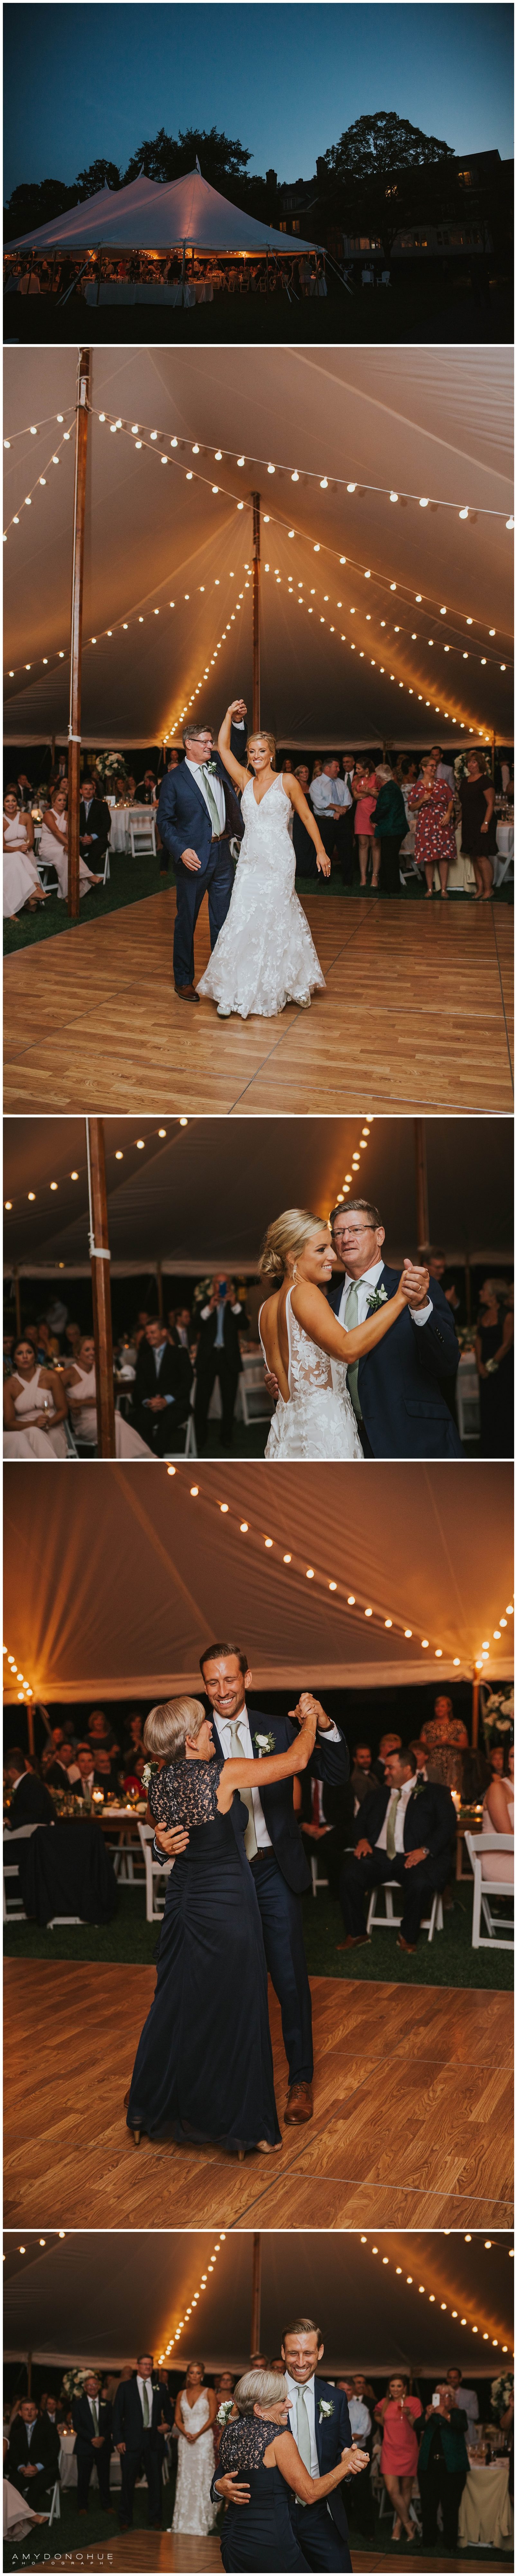 Parent Dances | Vermont Wedding Photographer | © Amy Donohue Photography